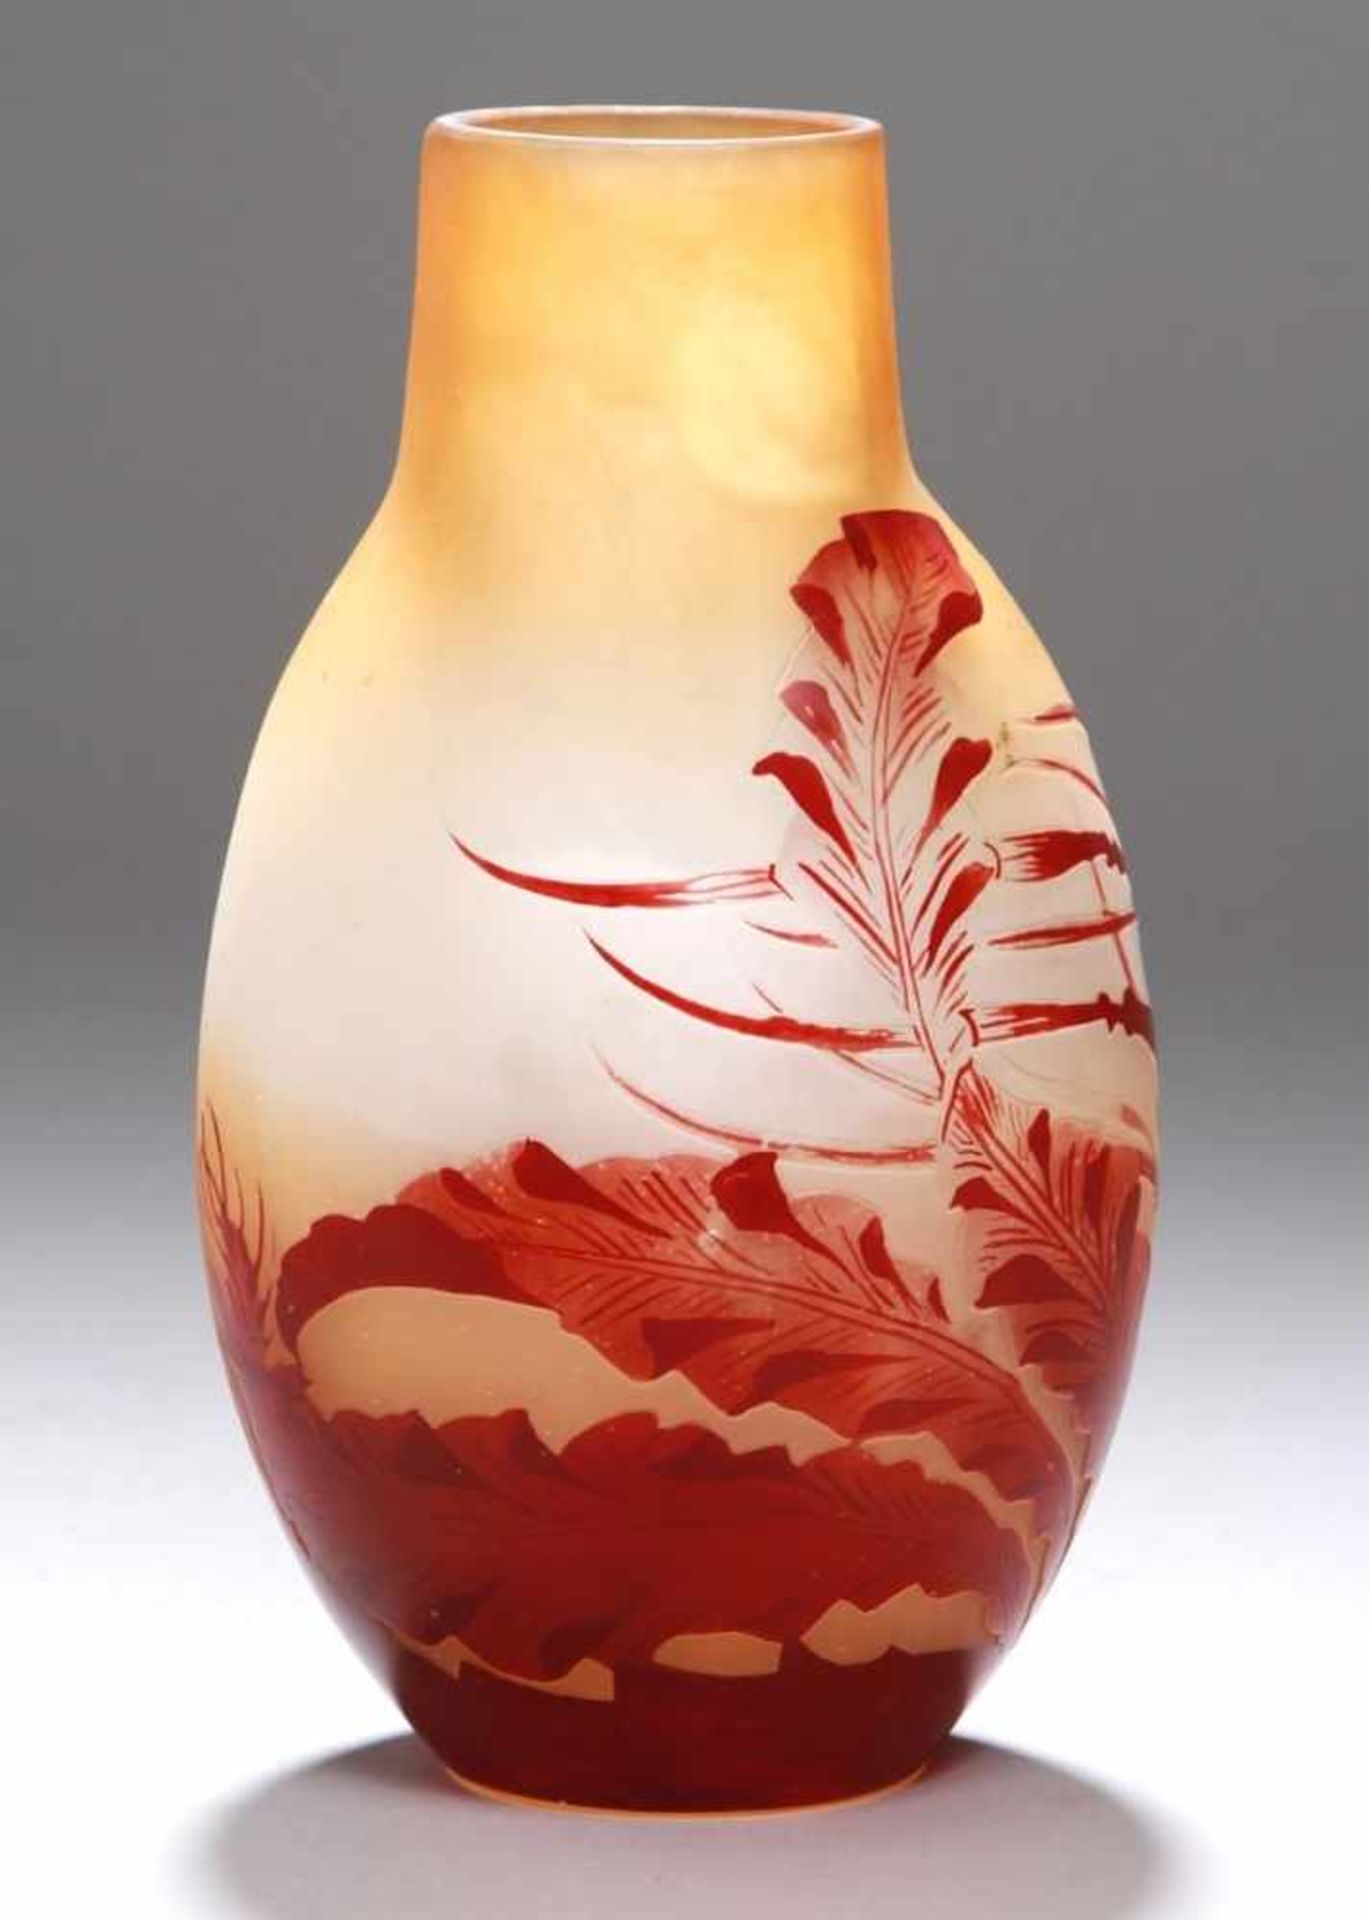 Glas-Ziervase, "Fougère", Emile Gallé, Nancy, um 1906-14, runder Stand, ovoid gebauchter,